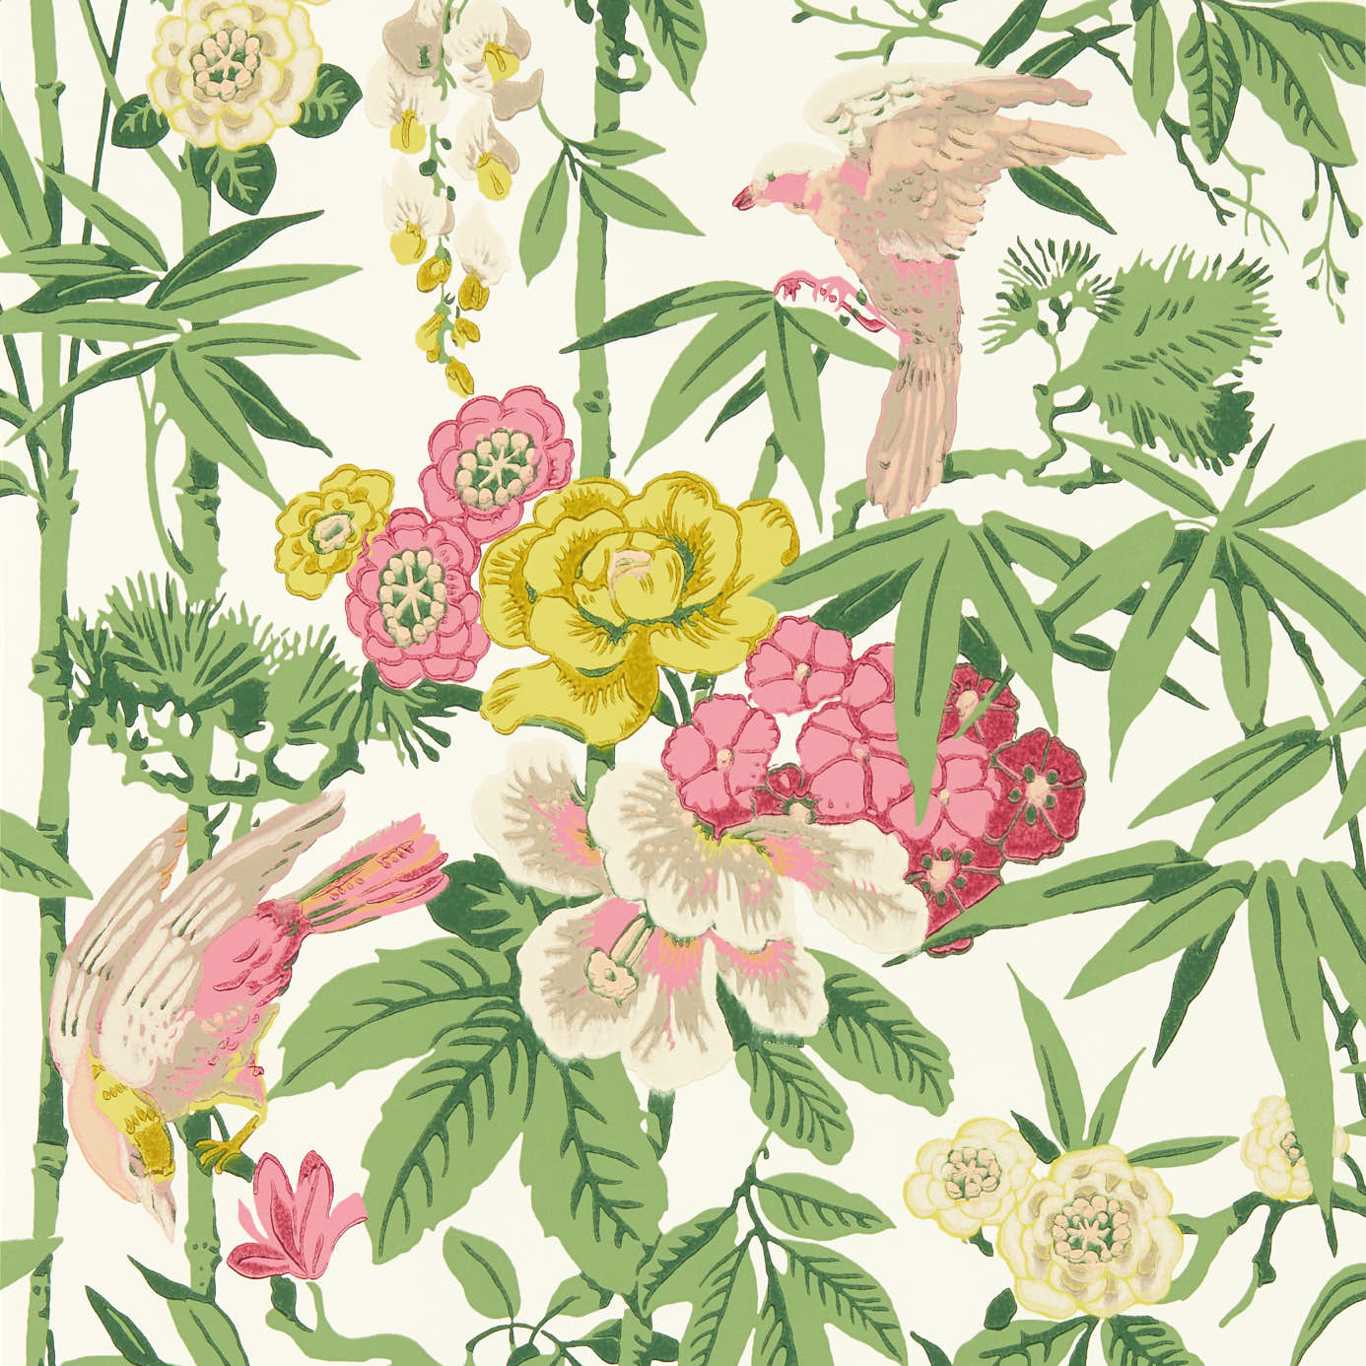 Bamboo & Birds Scallion Green Wallpaper DWAW217130 by Sanderson